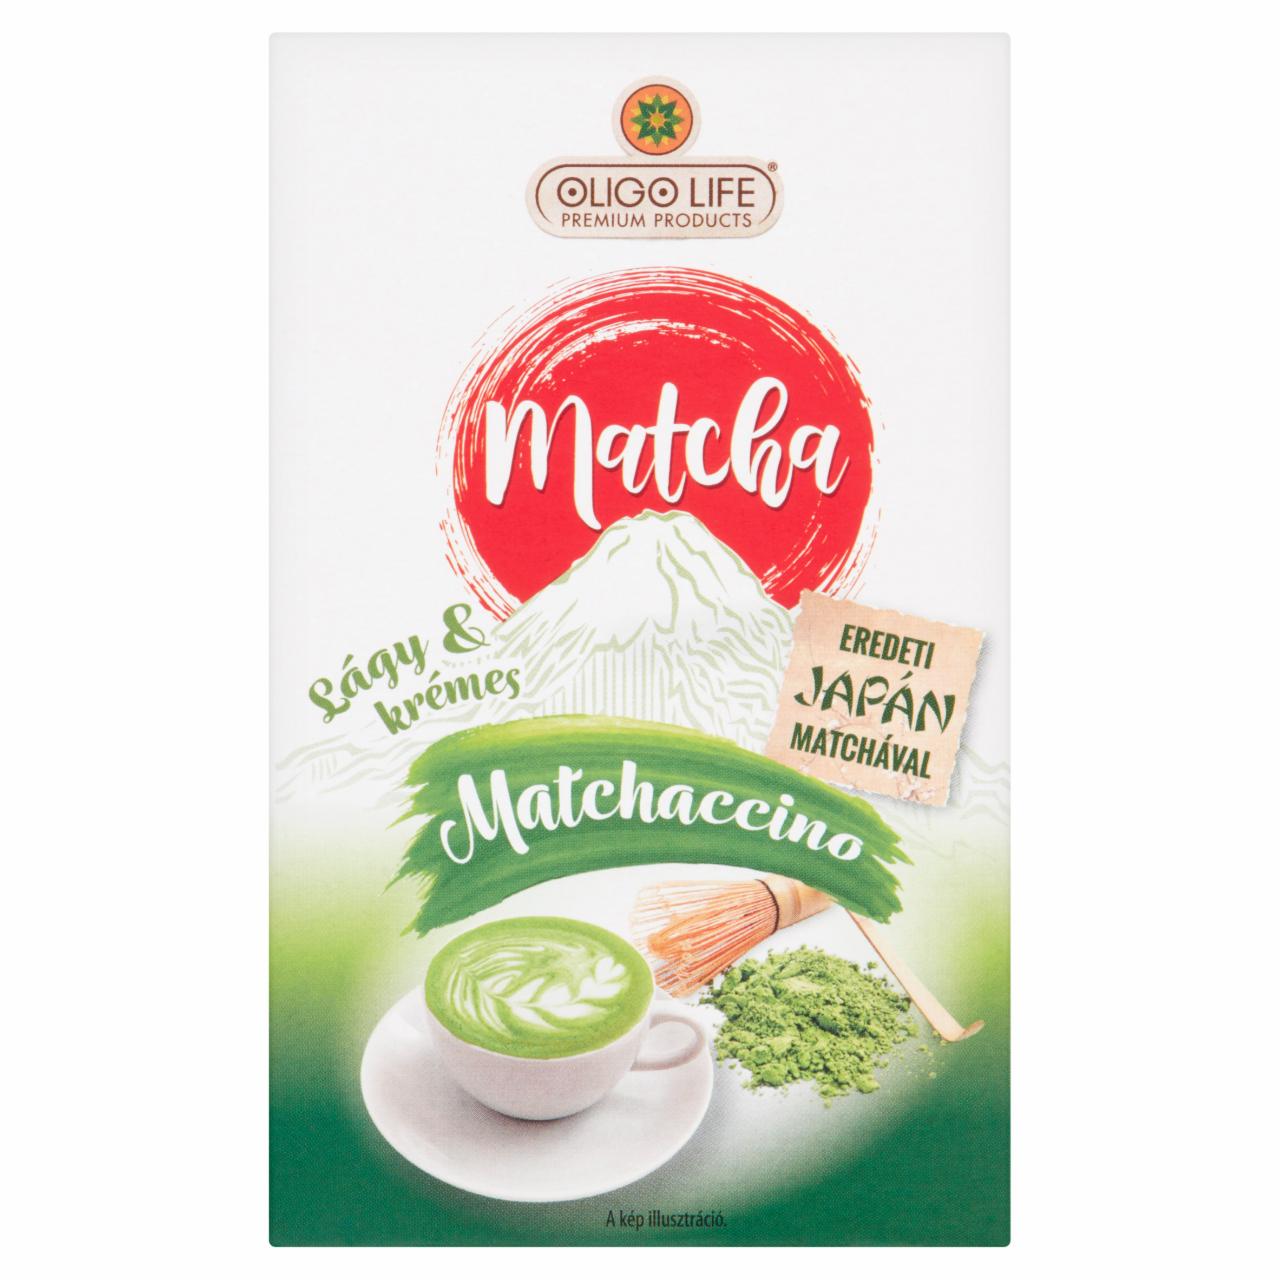 Képek - Oligo Life Matchaccino vanilla ízű matcha zöld tea specialitás 6 db 108 g